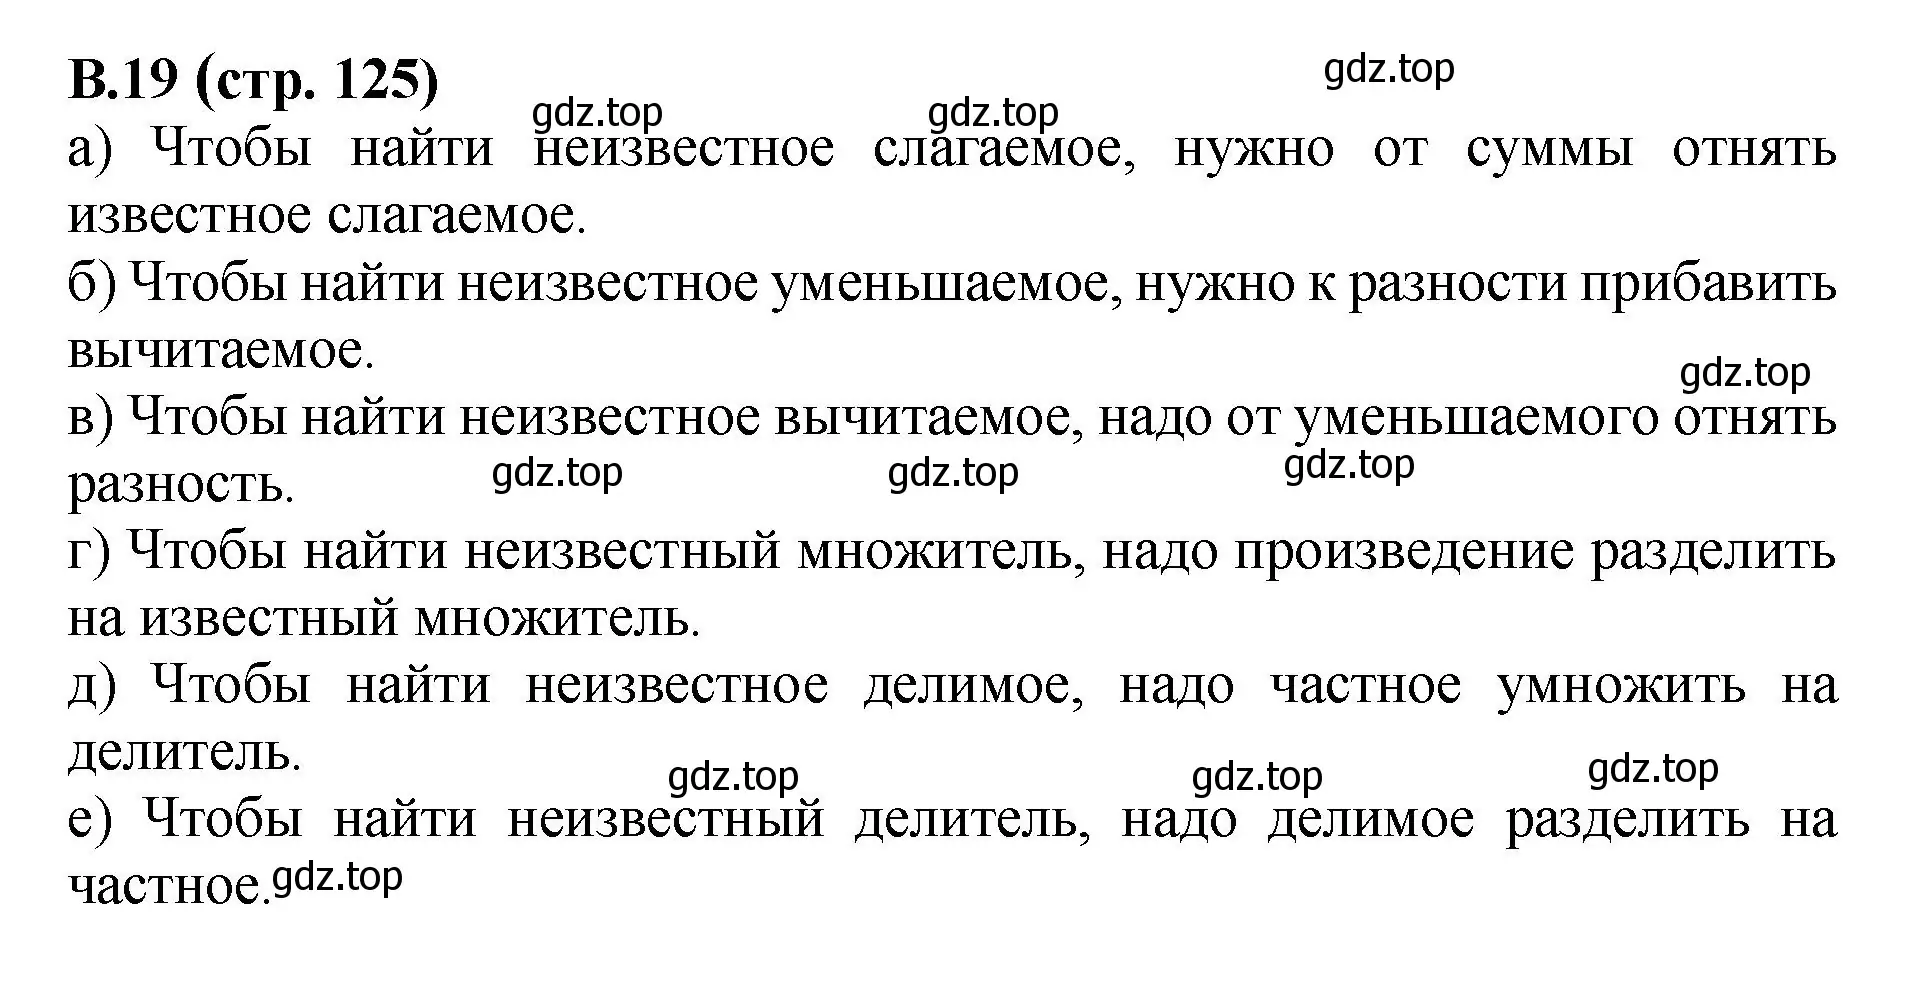 Решение номер 19 (страница 125) гдз по математике 6 класс Виленкин, Жохов, учебник 2 часть